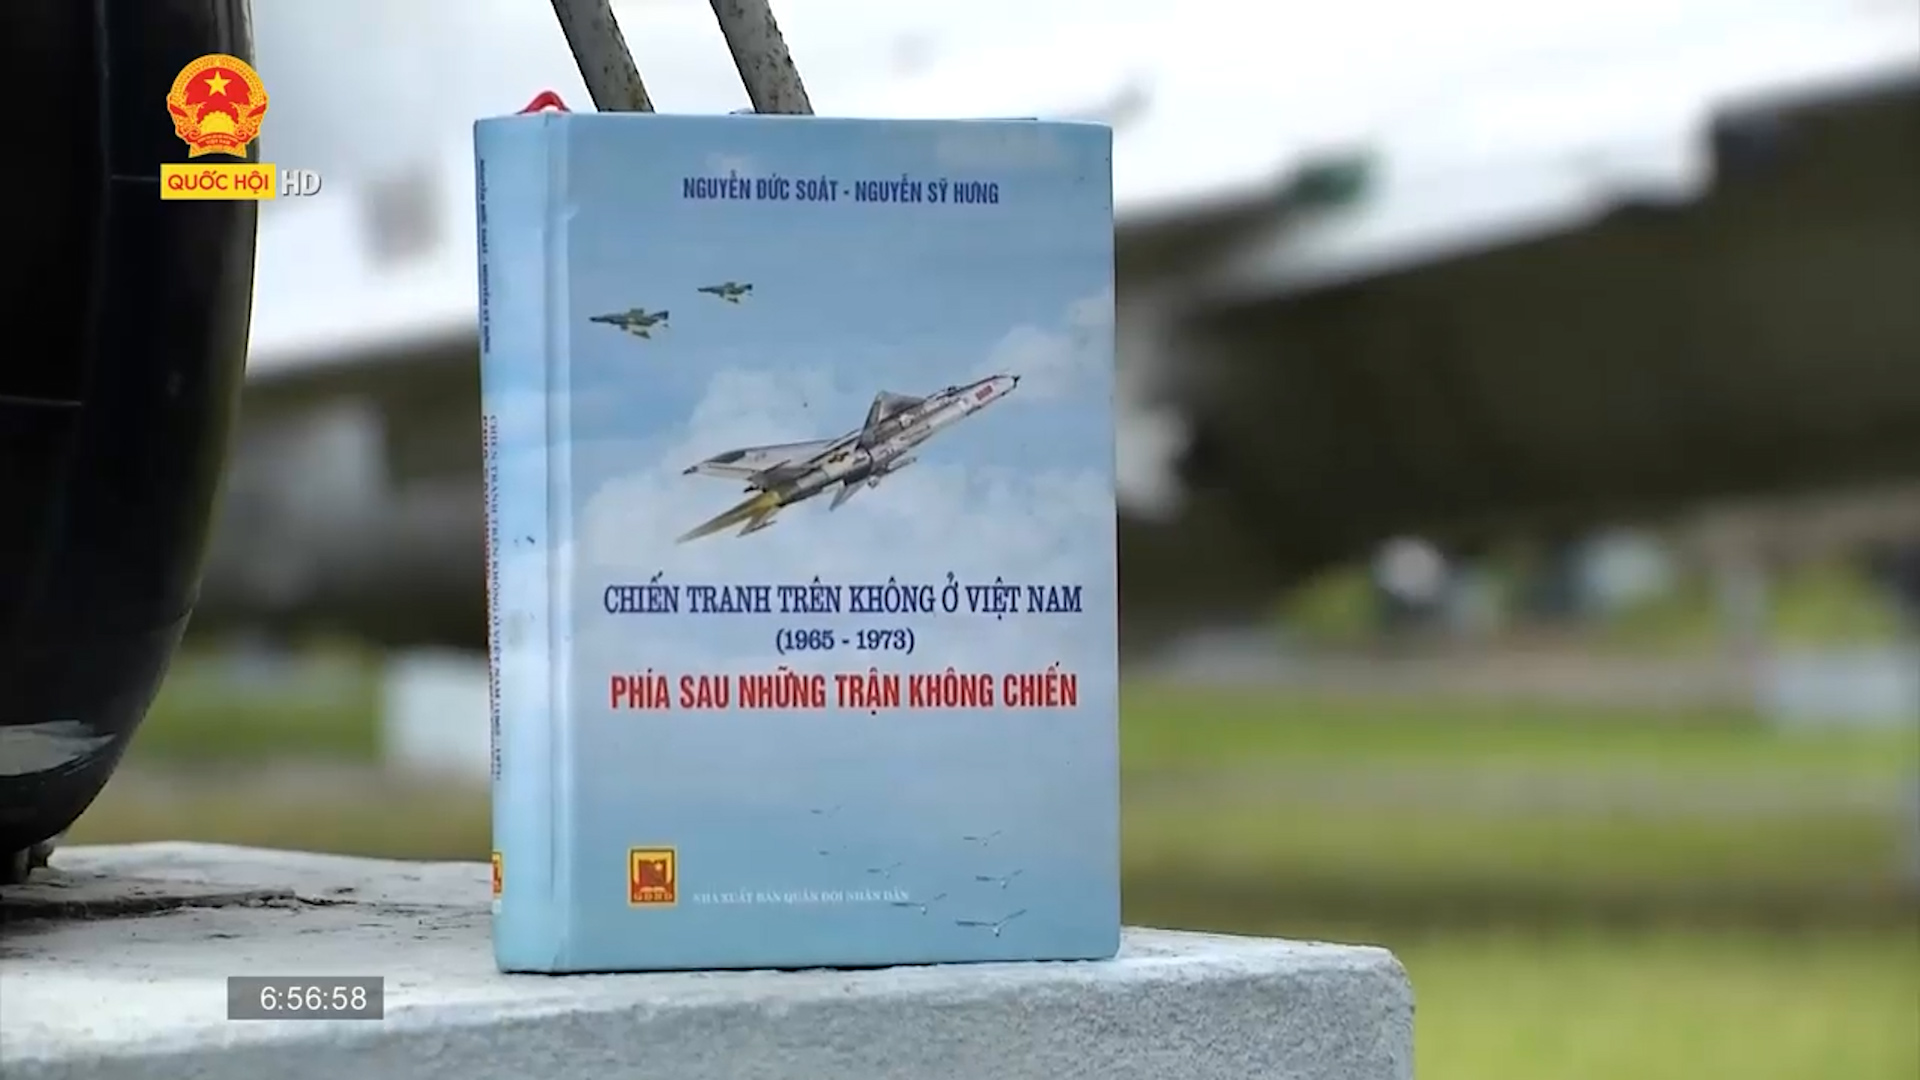 Cuốn sách tôi chọn: Chiến tranh trên không ở Việt Nam - Phía sau những trận không chiến